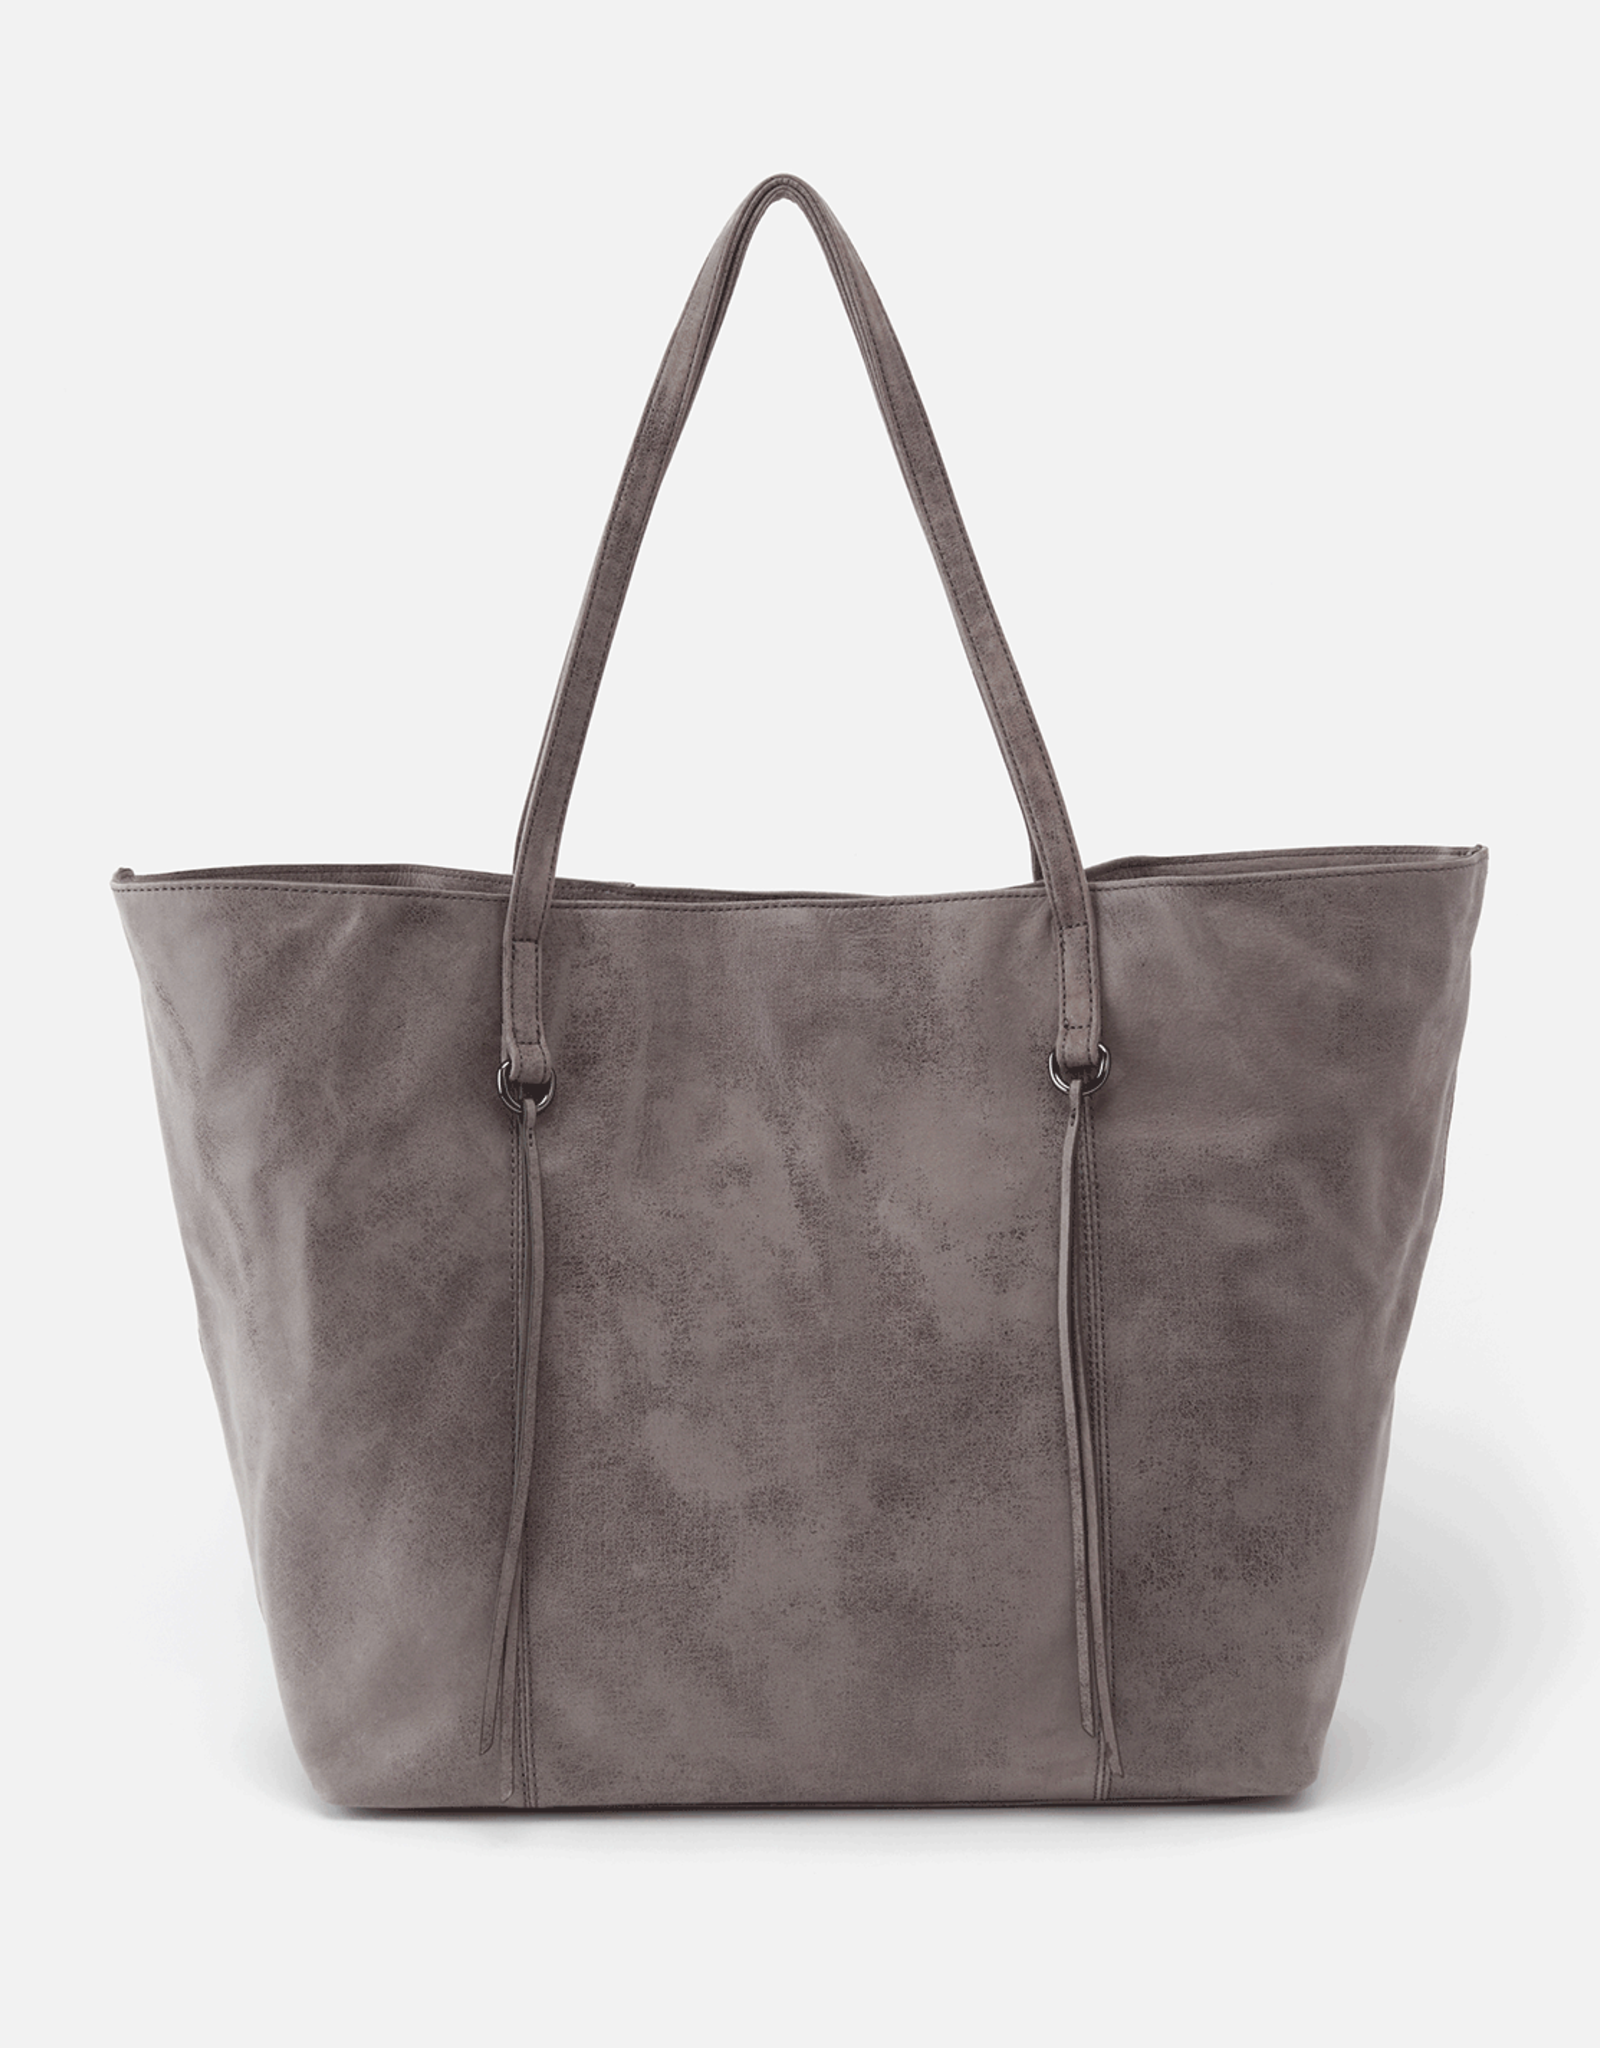 Grey Suede Tote Bag